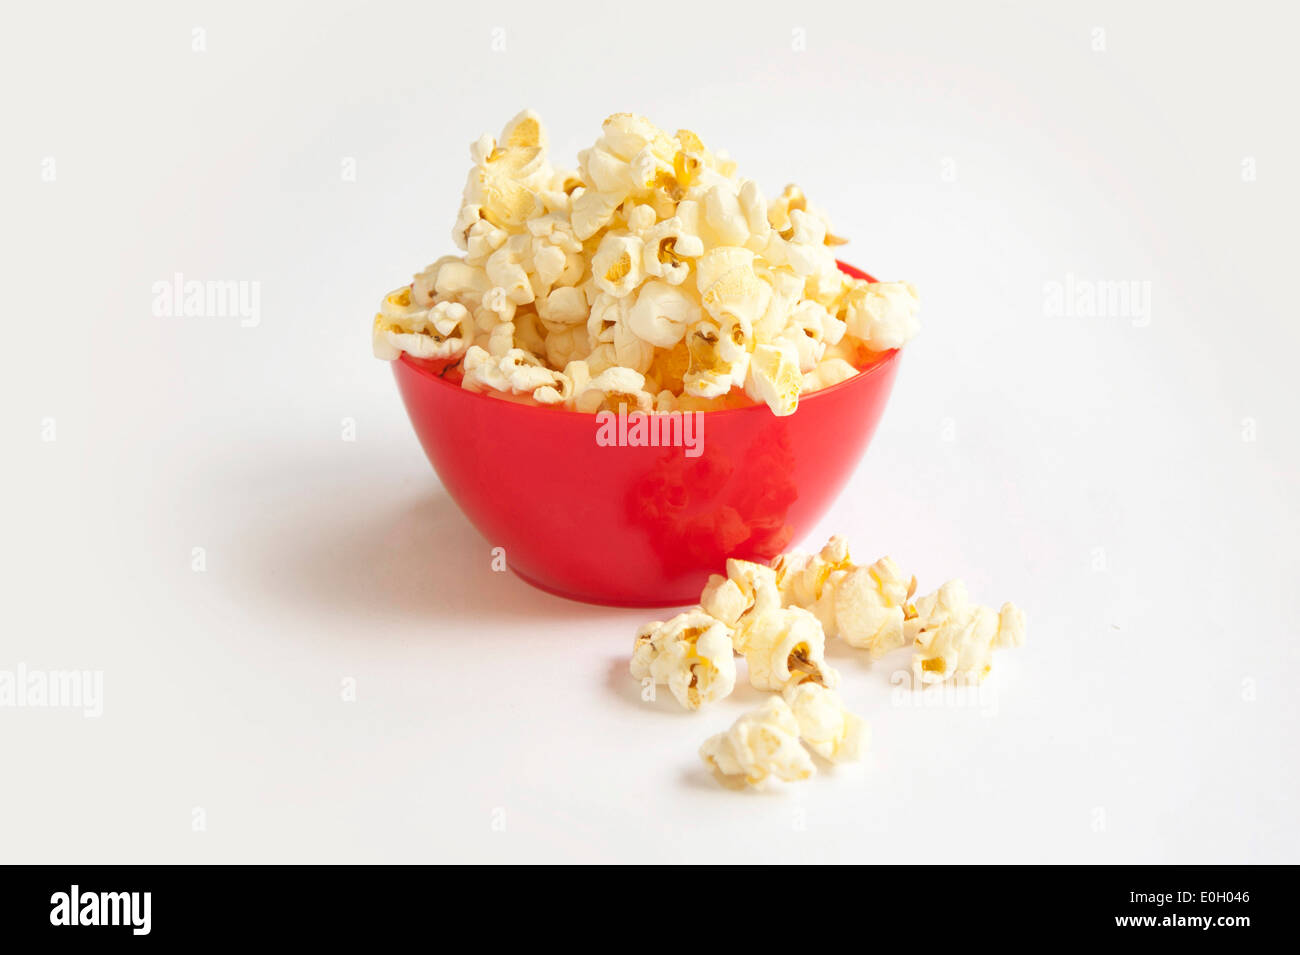 Popcorn in red bowl Stock Photo